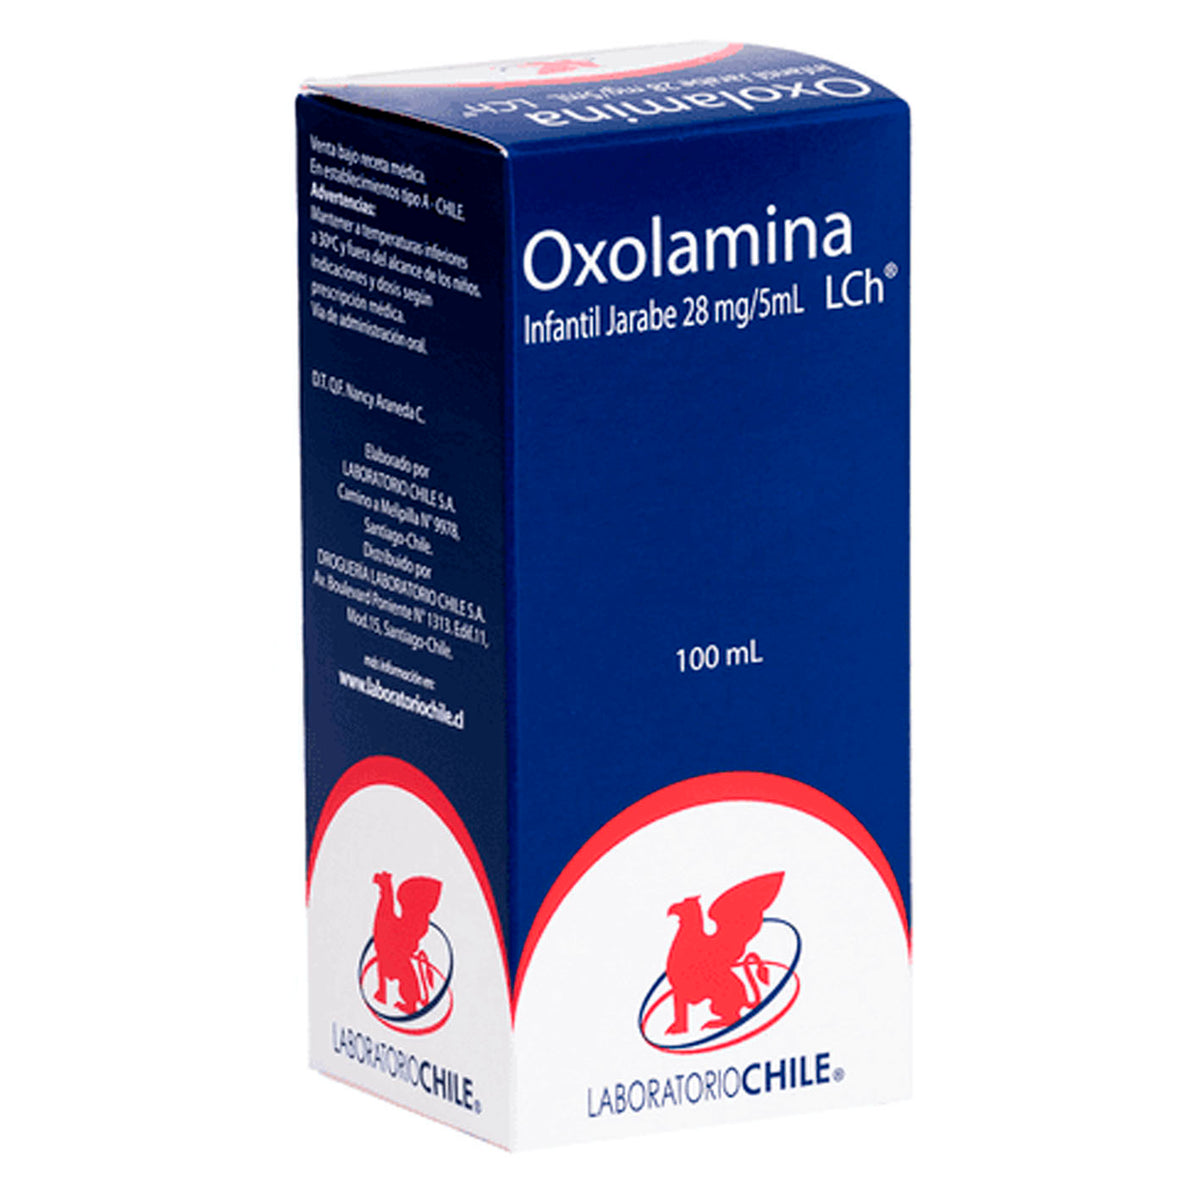 Oxolamina Jarabe infantil 28mg/5ml